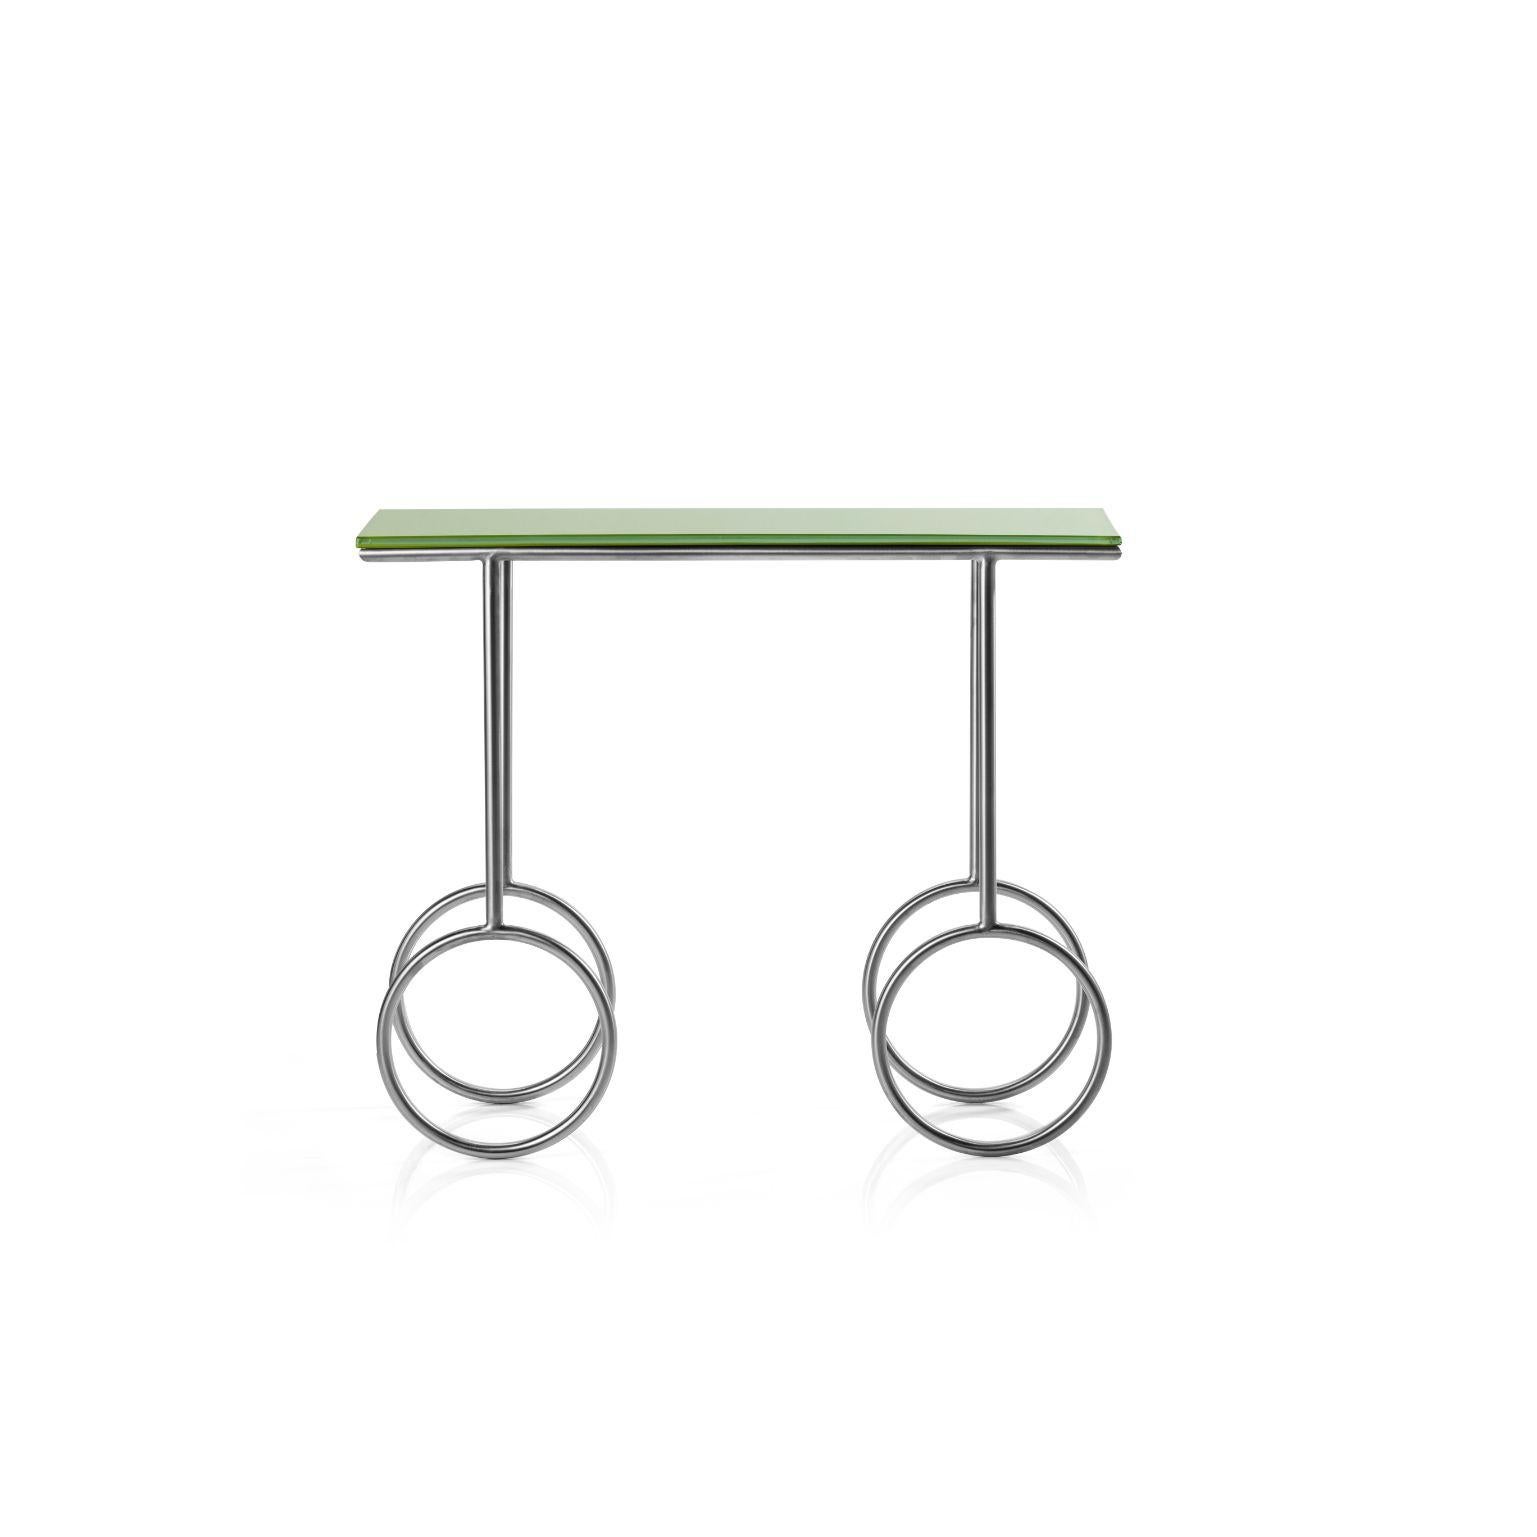 Olivia - Tisch von Cultivado Em Casa
Abmessungen: 70 x 25 x 49 cm
MATERIALIEN: Rostfreier Stahl und lackiertes Glas.

Ein leichtes und harmonisches Design, das sich durch die Zartheit der Füße auszeichnet. Ein Tisch, der an weibliche Formen